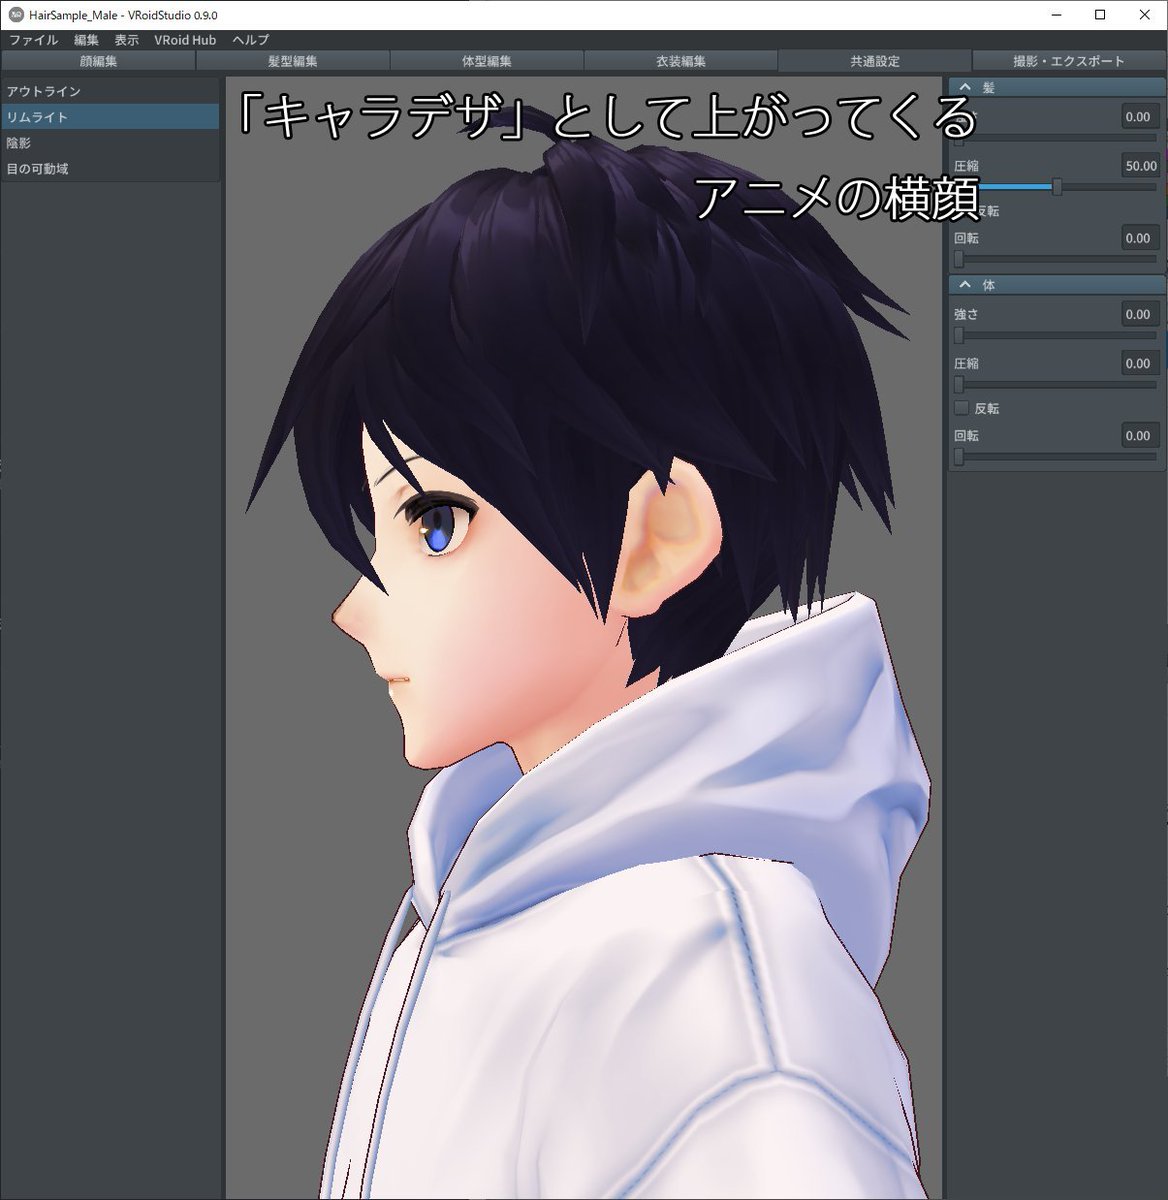 アニメのキャラデザの横顔の真実 アニメの横顔のデザインは3dモデルのための 真横 のデザイン画ではない 3d 3dmodeling Gamedev Togetter